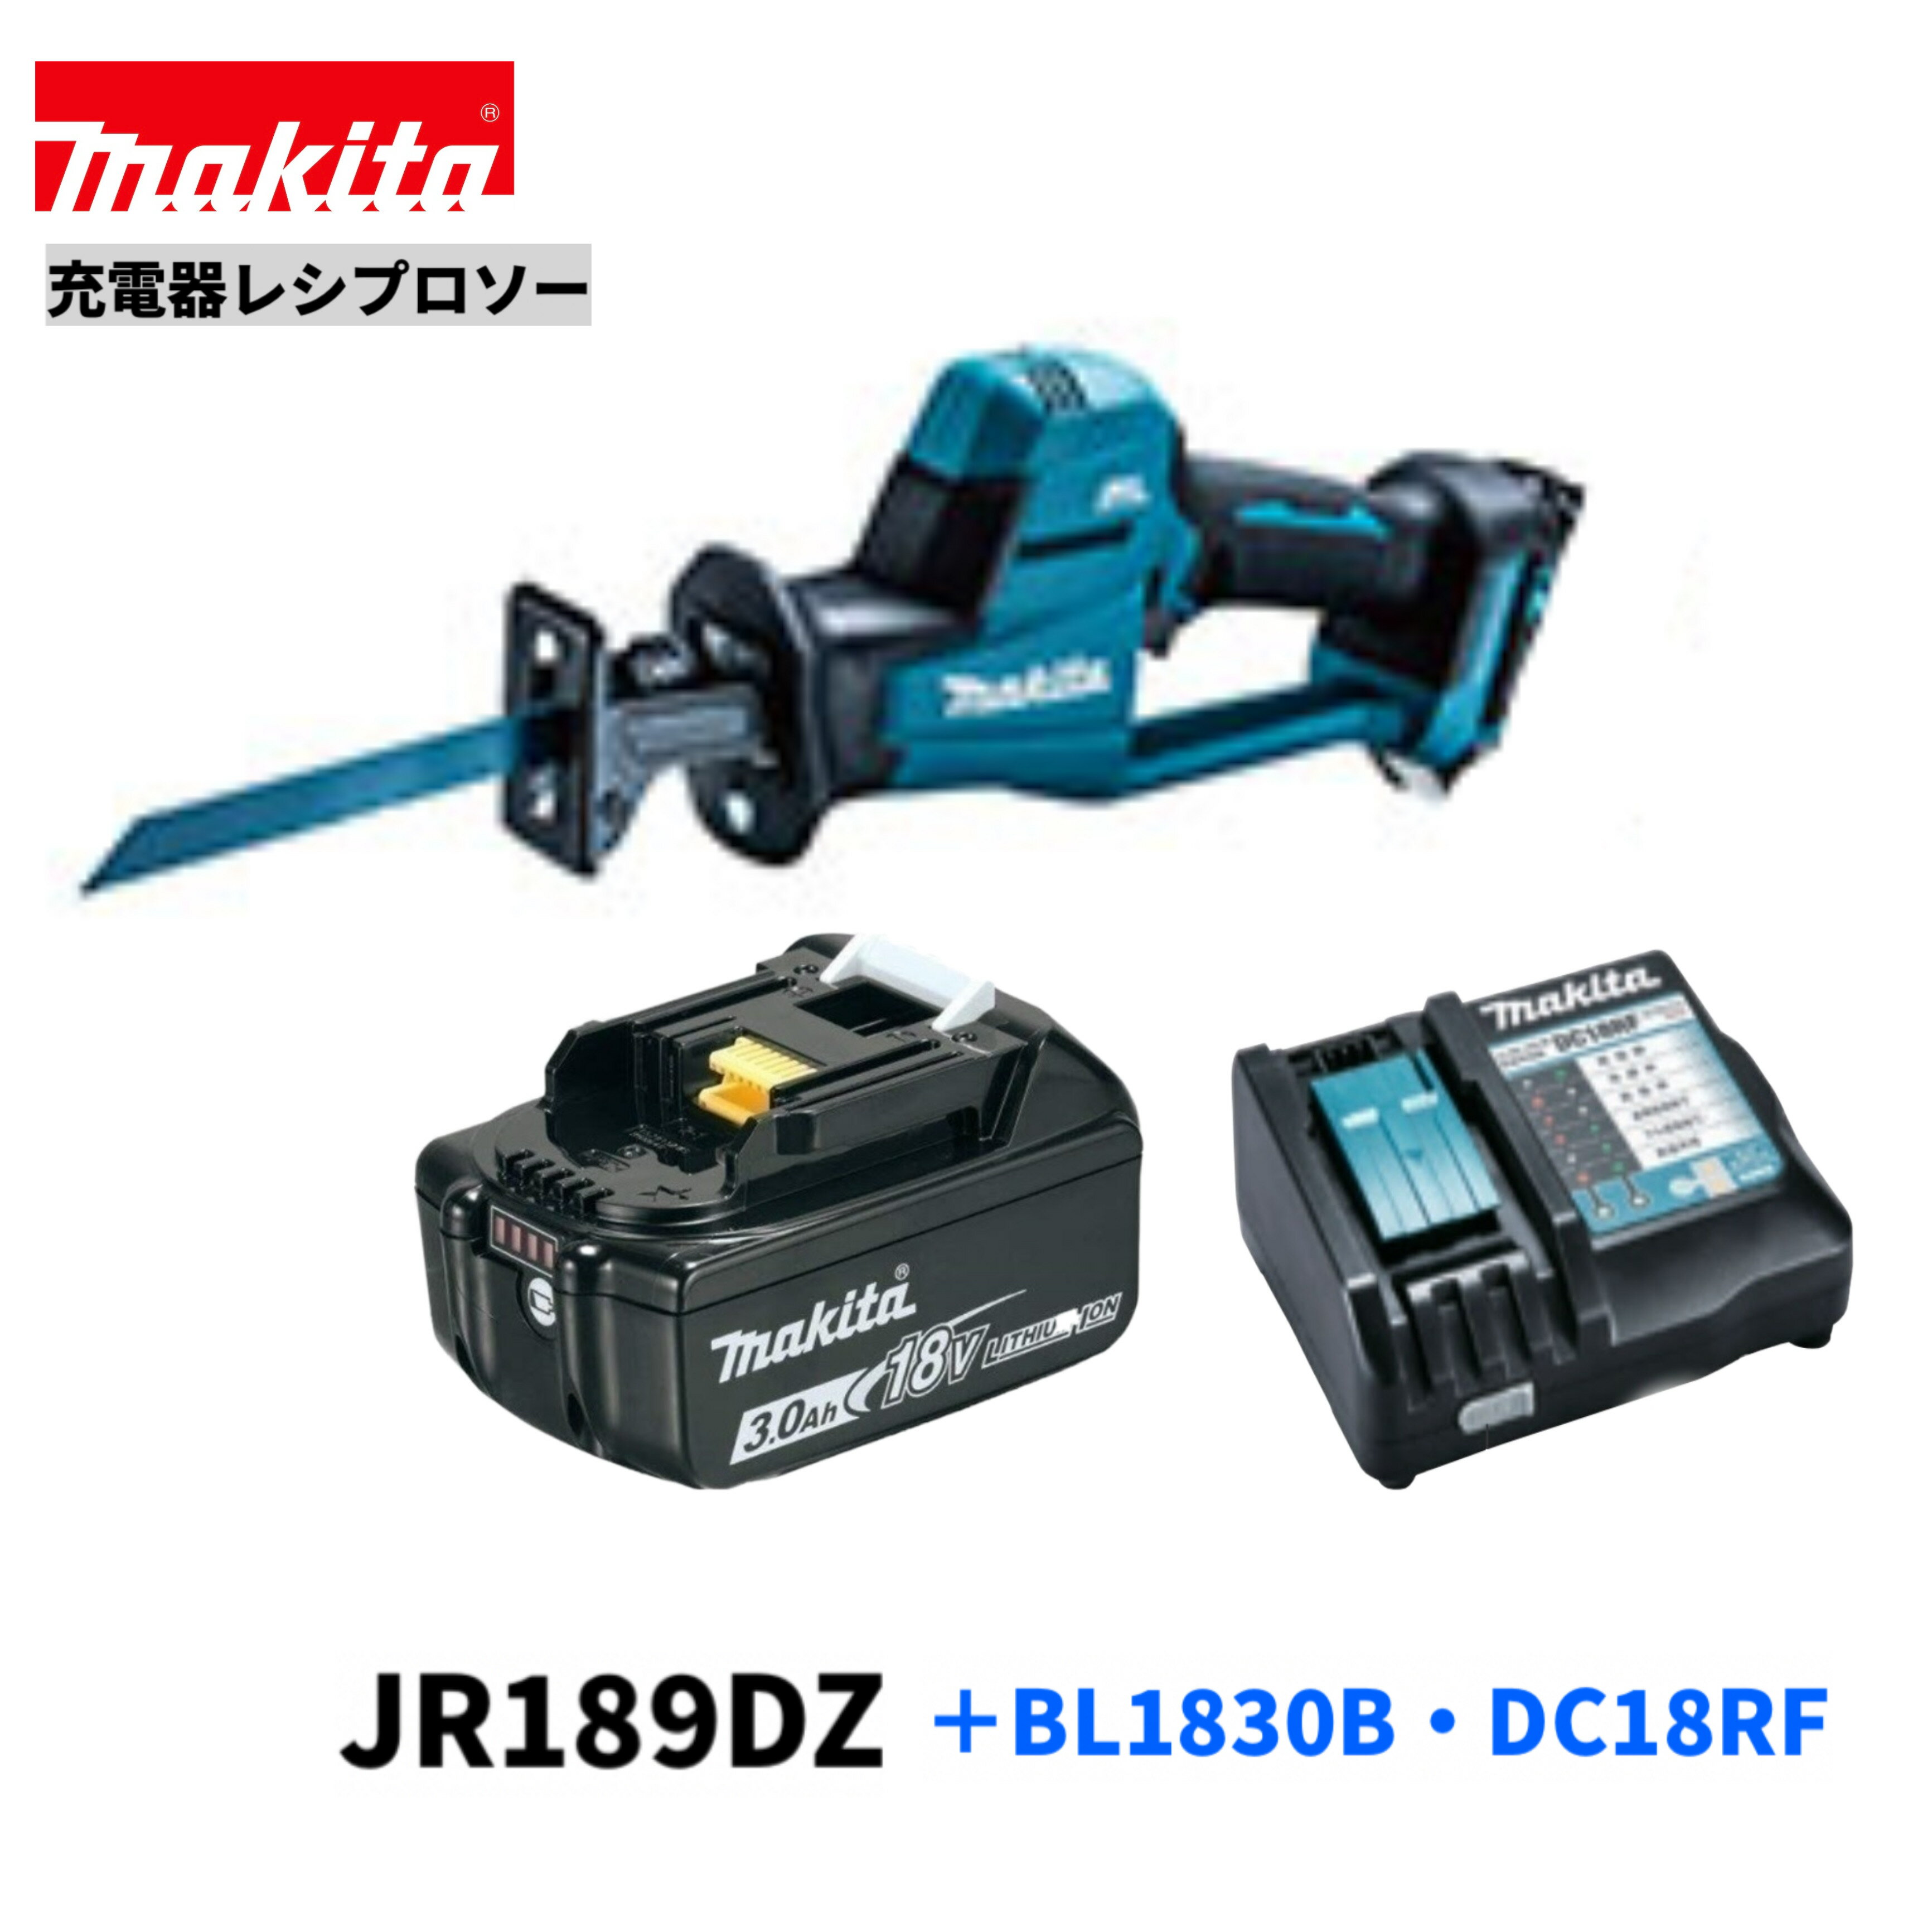 マキタ JR189DZ + BL1830B + DC18RF 18V 充電式レシプロソー 【本体・バッテリBL1830B×1本・充電器DC18RF】